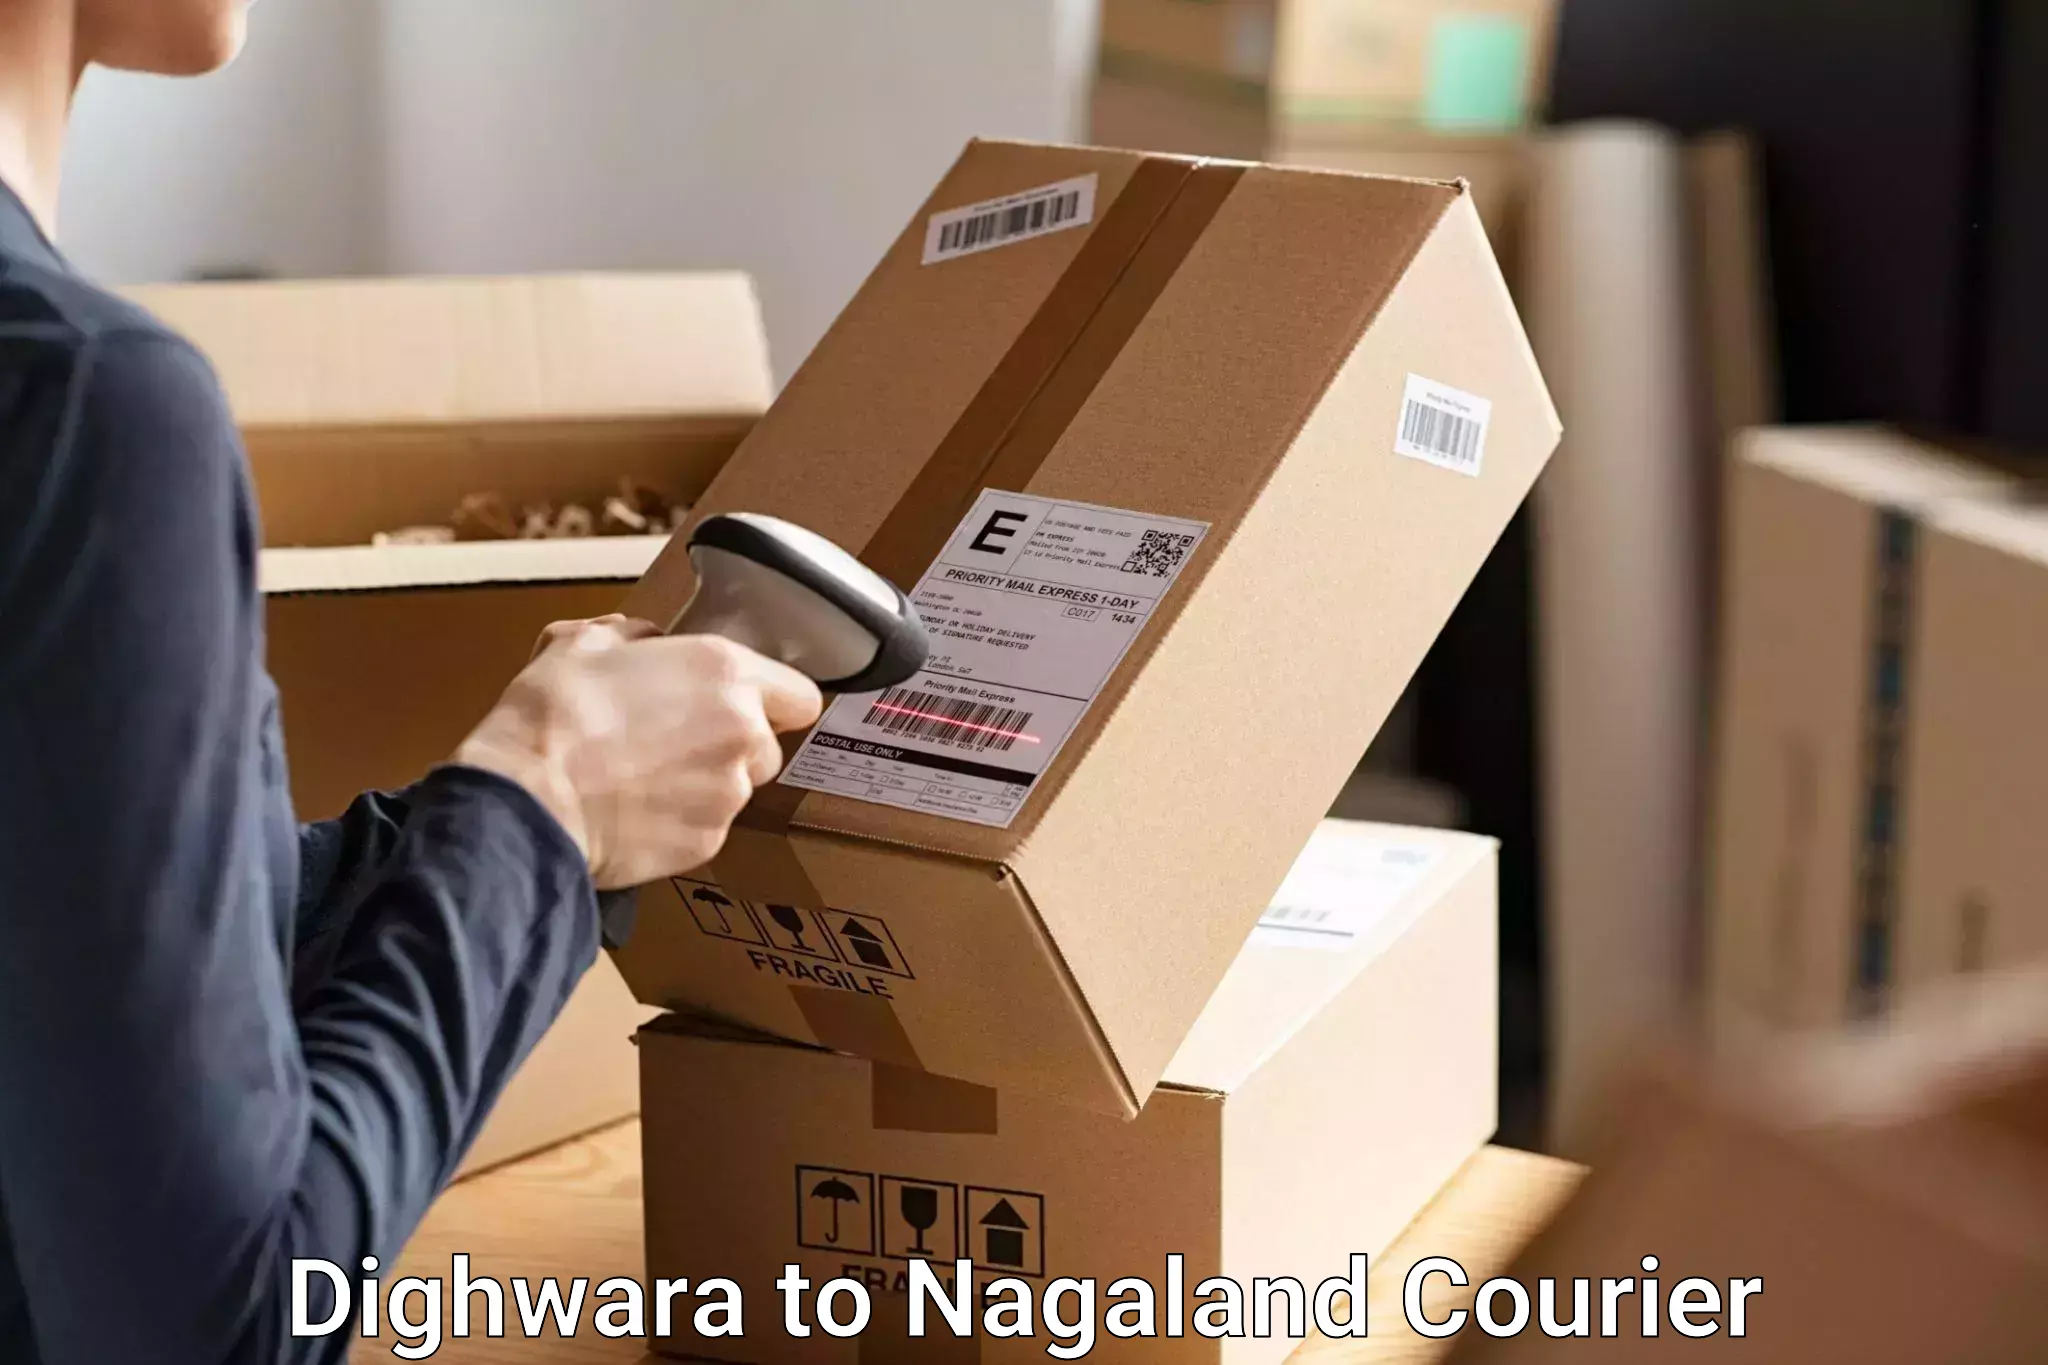 Baggage transport scheduler Dighwara to NIT Nagaland